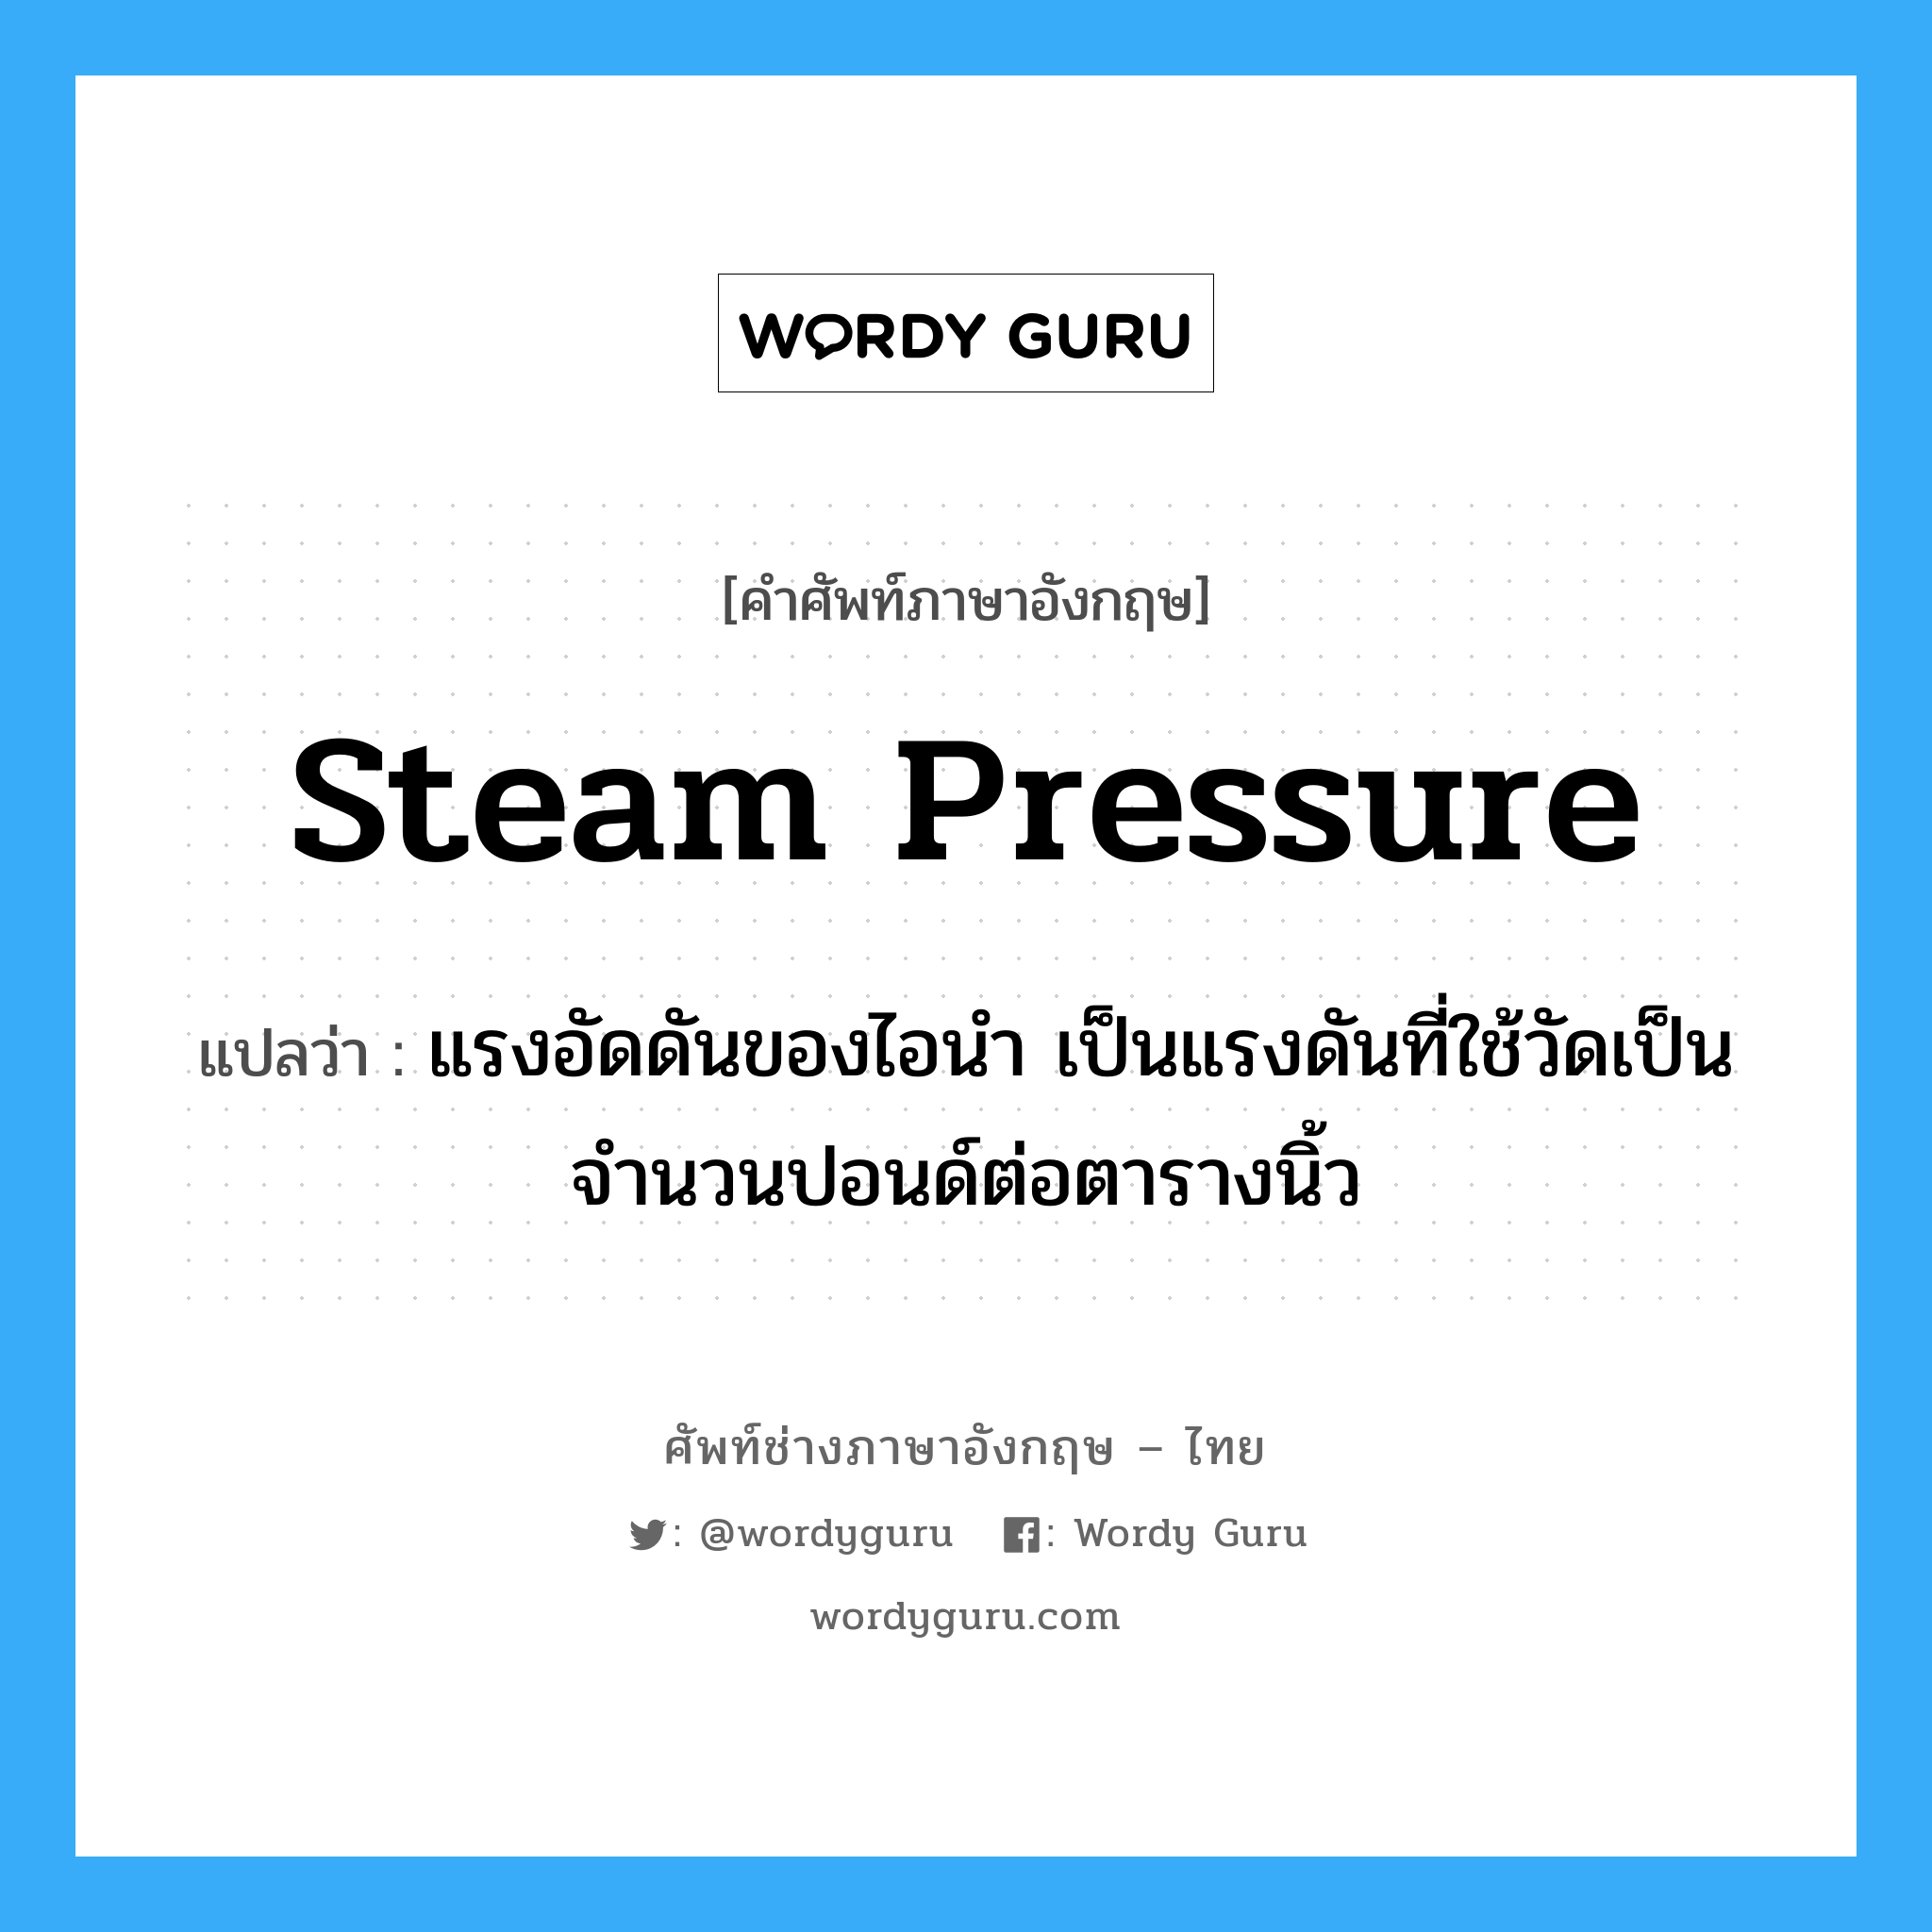 steam pressure แปลว่า?, คำศัพท์ช่างภาษาอังกฤษ - ไทย steam pressure คำศัพท์ภาษาอังกฤษ steam pressure แปลว่า แรงอัดดันของไอนำ เป็นแรงดันที่ใช้วัดเป็นจำนวนปอนด์ต่อตารางนิ้ว